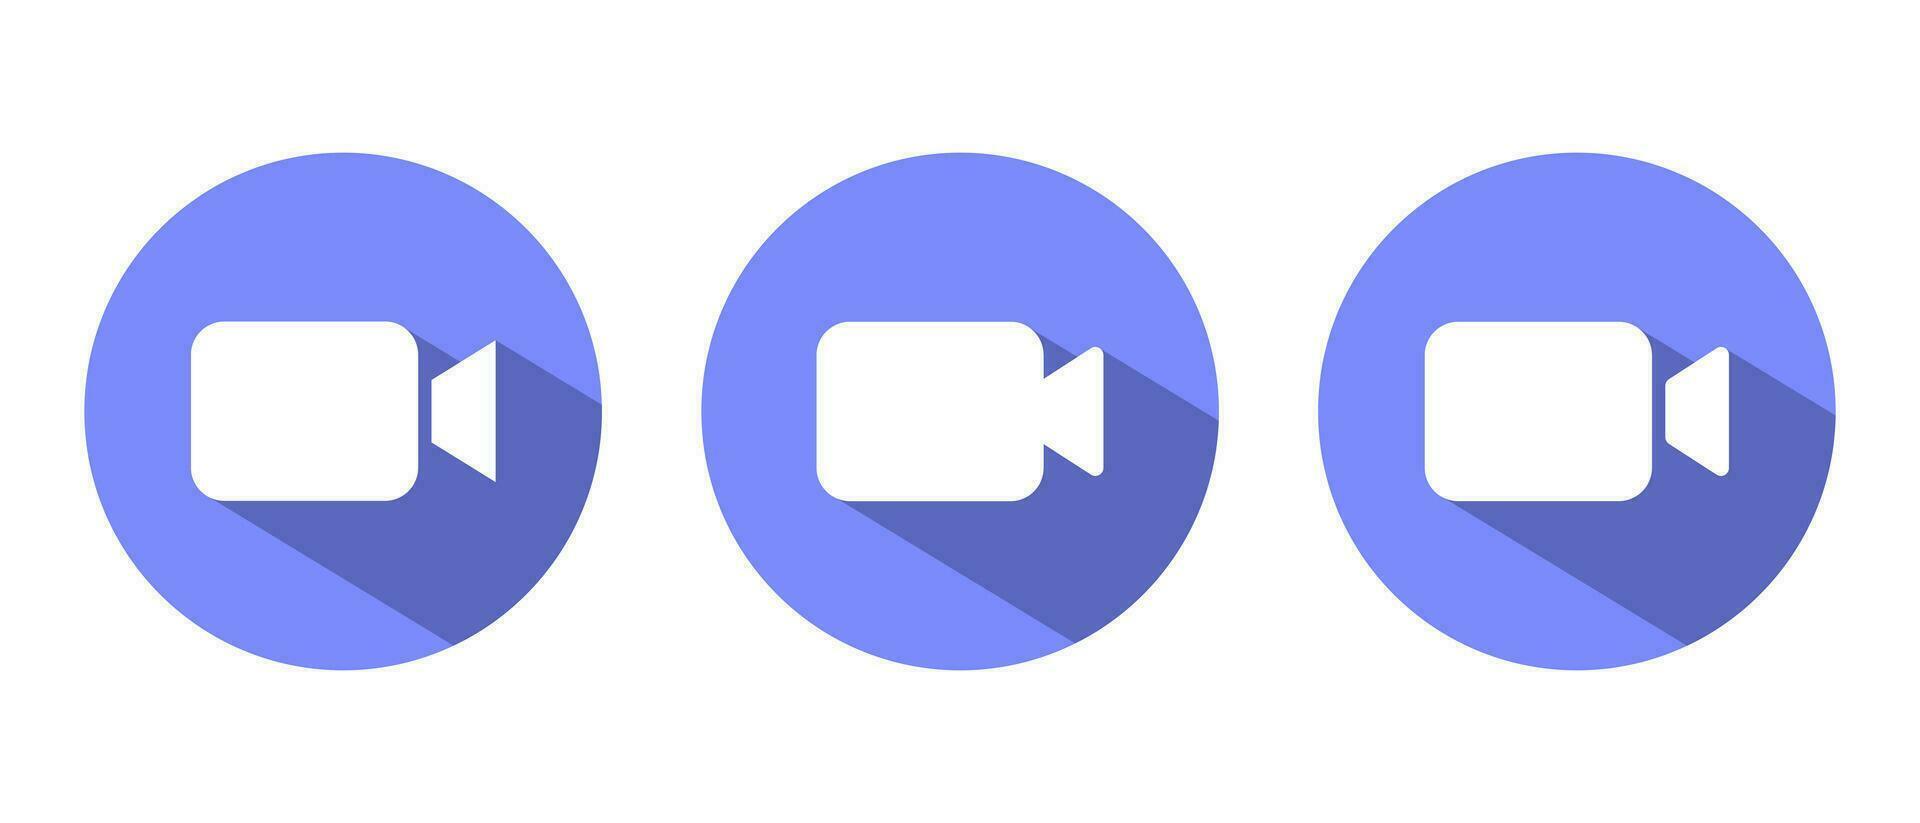 Video call icon with long shadow. Social media camera button vector